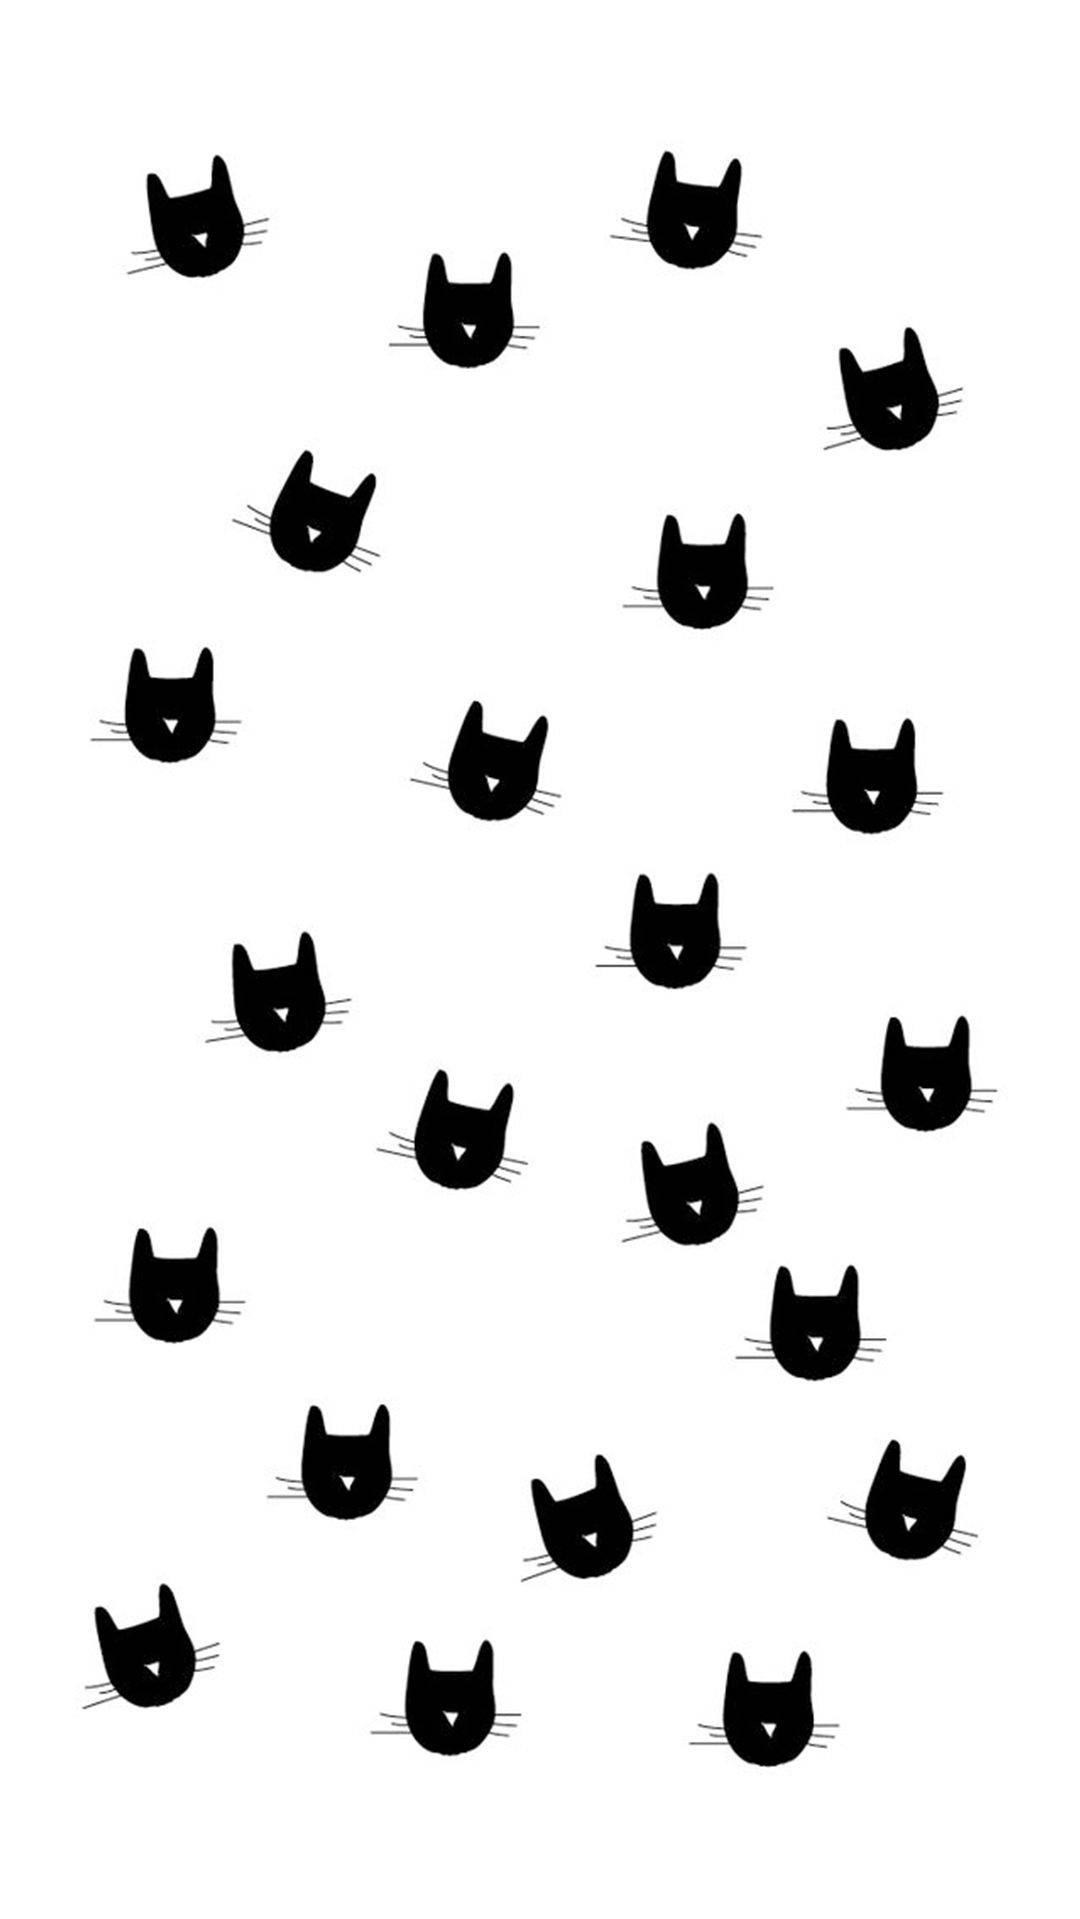 [37+] Cute Black Cat Wallpapers | WallpaperSafari